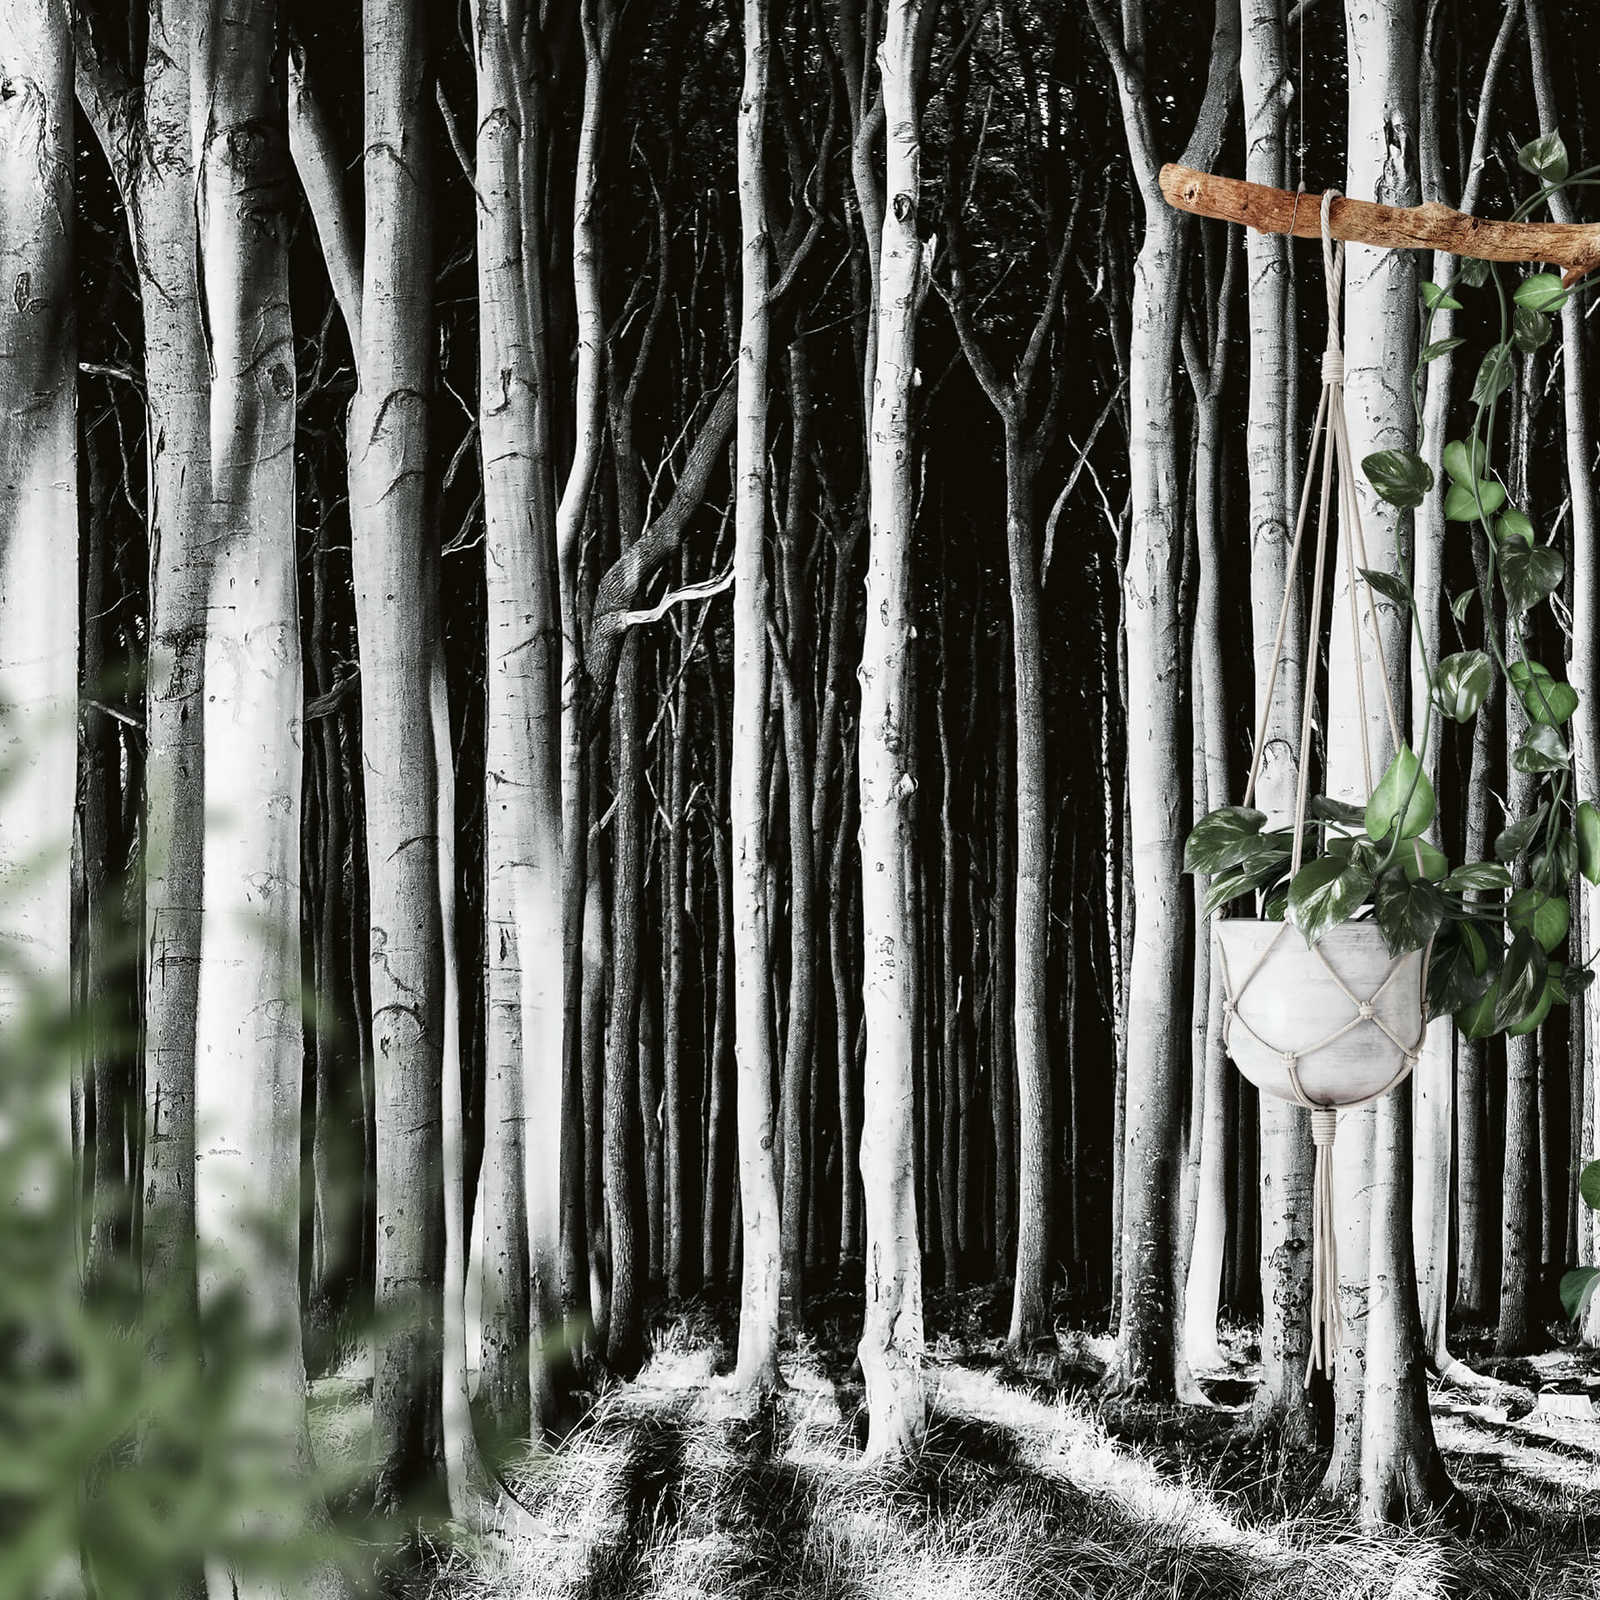             Nature Ghost Forest Behang - Zwart, Wit, Grijs
        